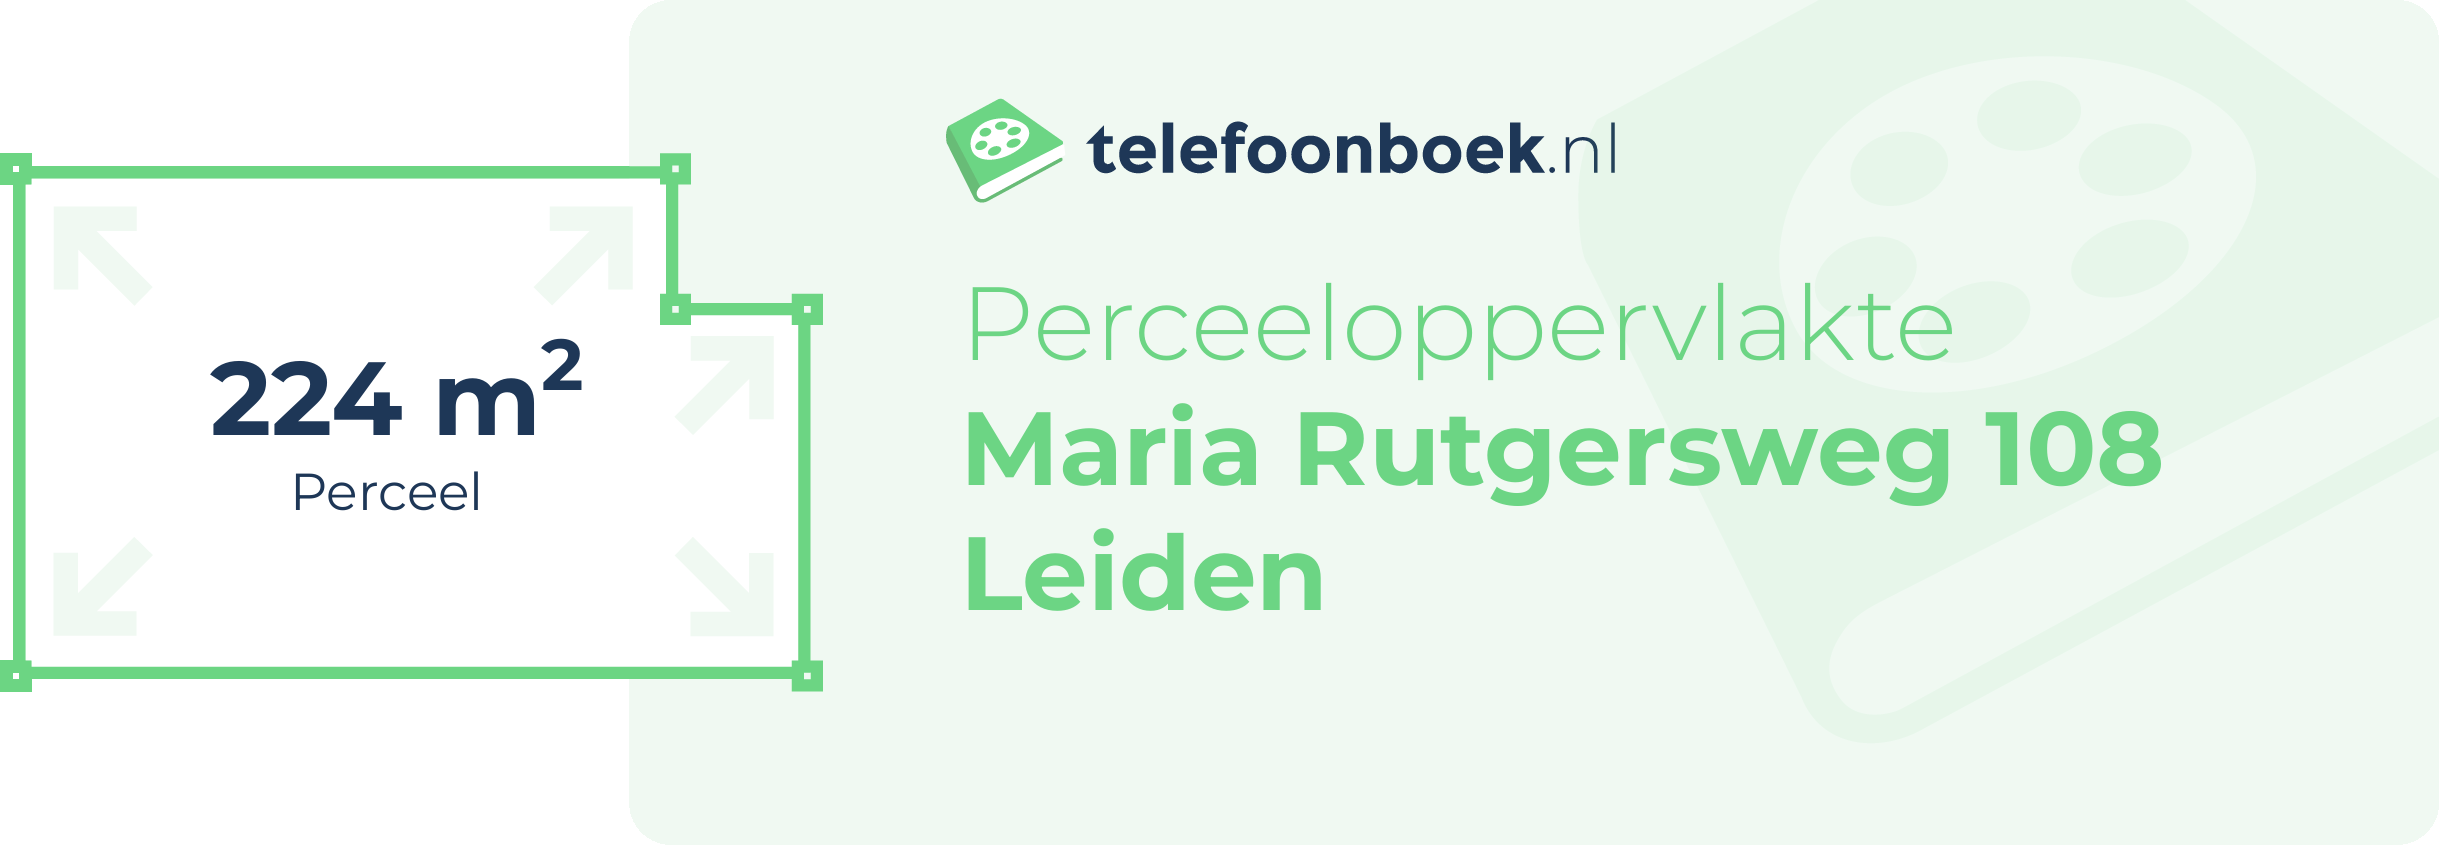 Perceeloppervlakte Maria Rutgersweg 108 Leiden